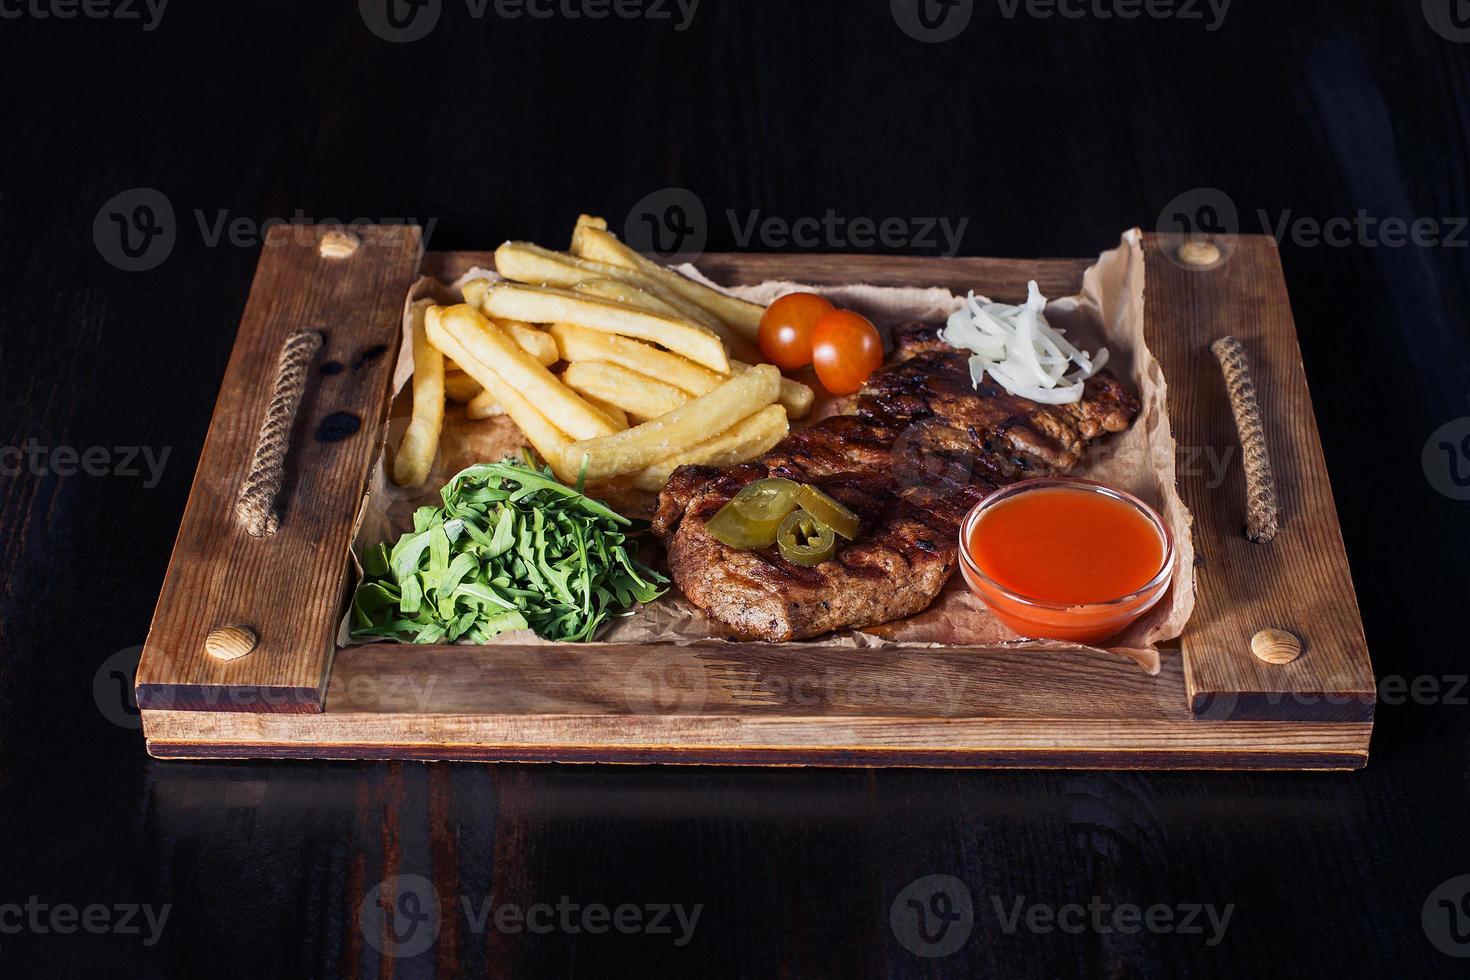 Filetsteak mit Pommes Frites auf einem Holztablett, schöne Portion, dunkler Hintergrund foto